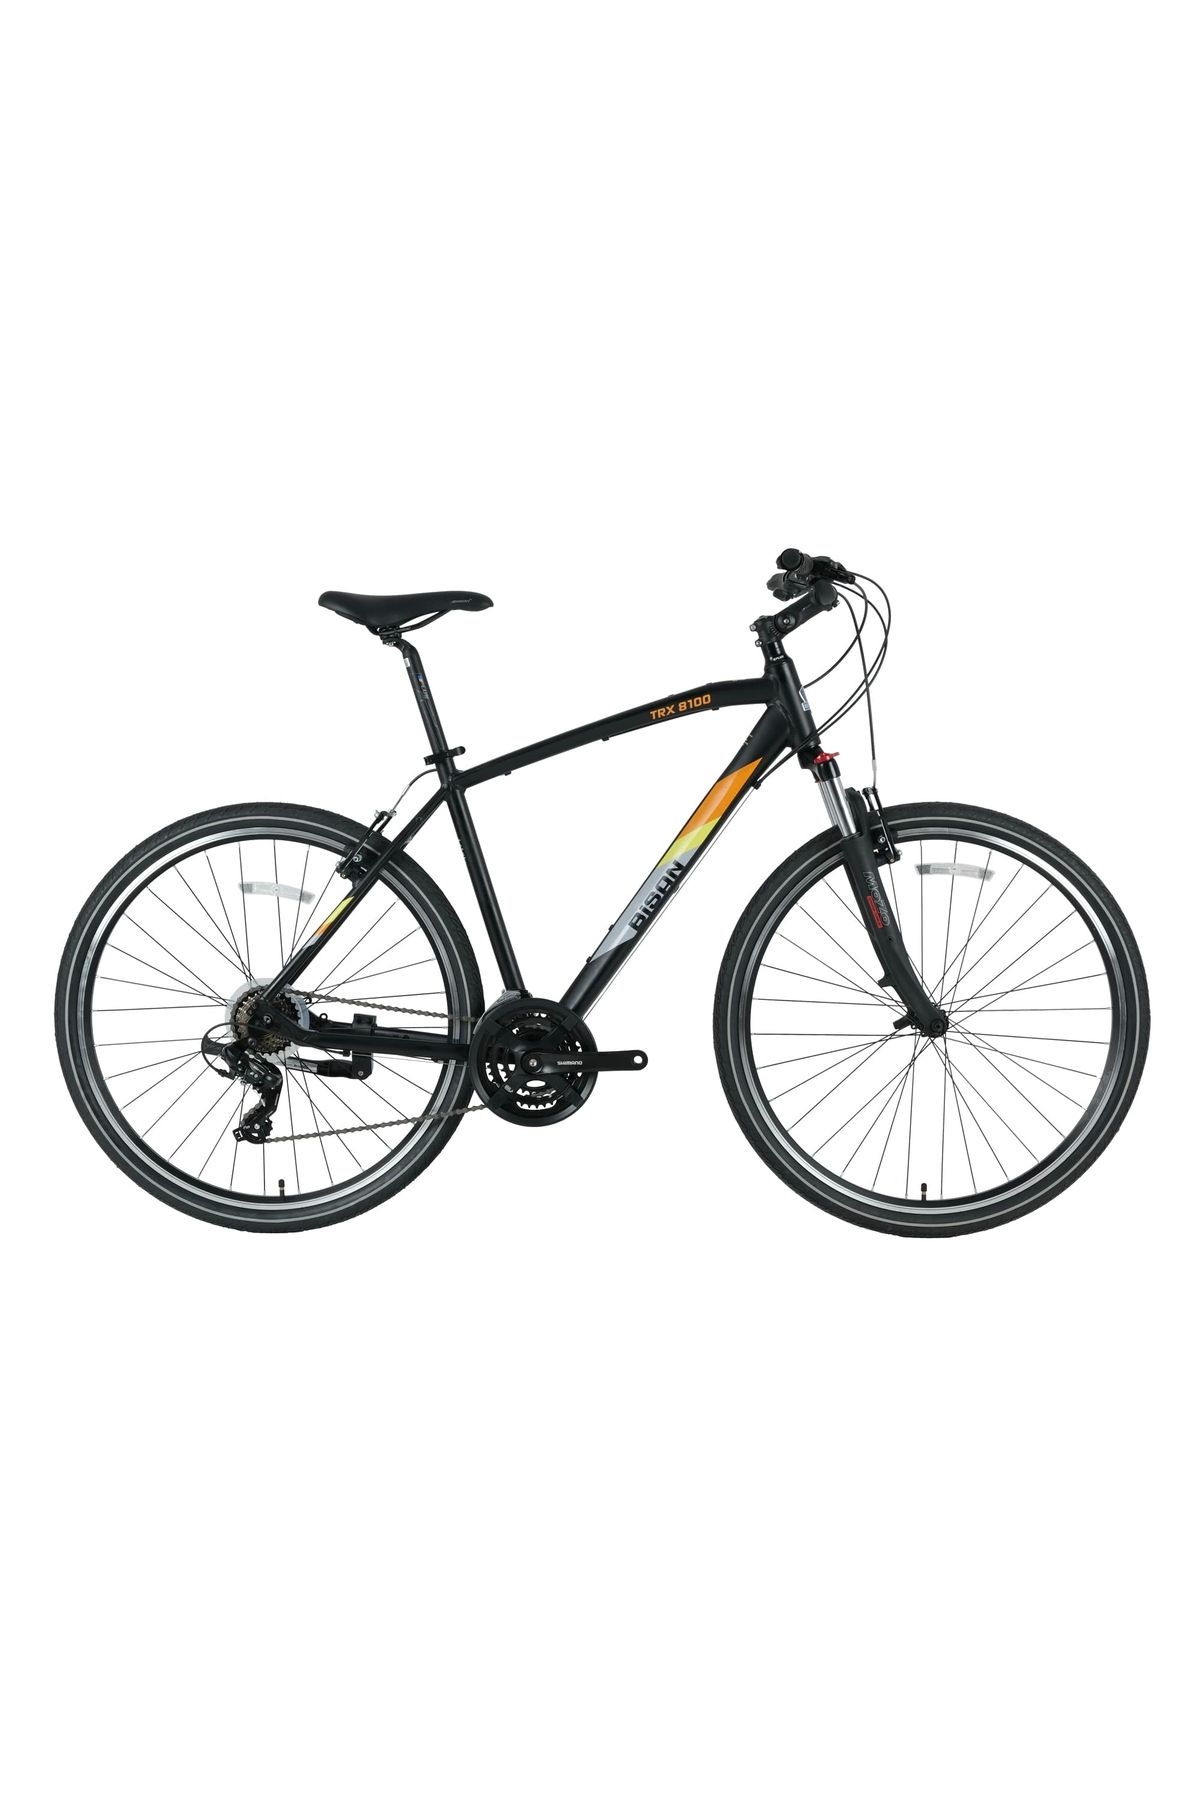 Bisan Trx 8100 Trekking Bisikleti | 56cm Kadro | Siyah-sarı